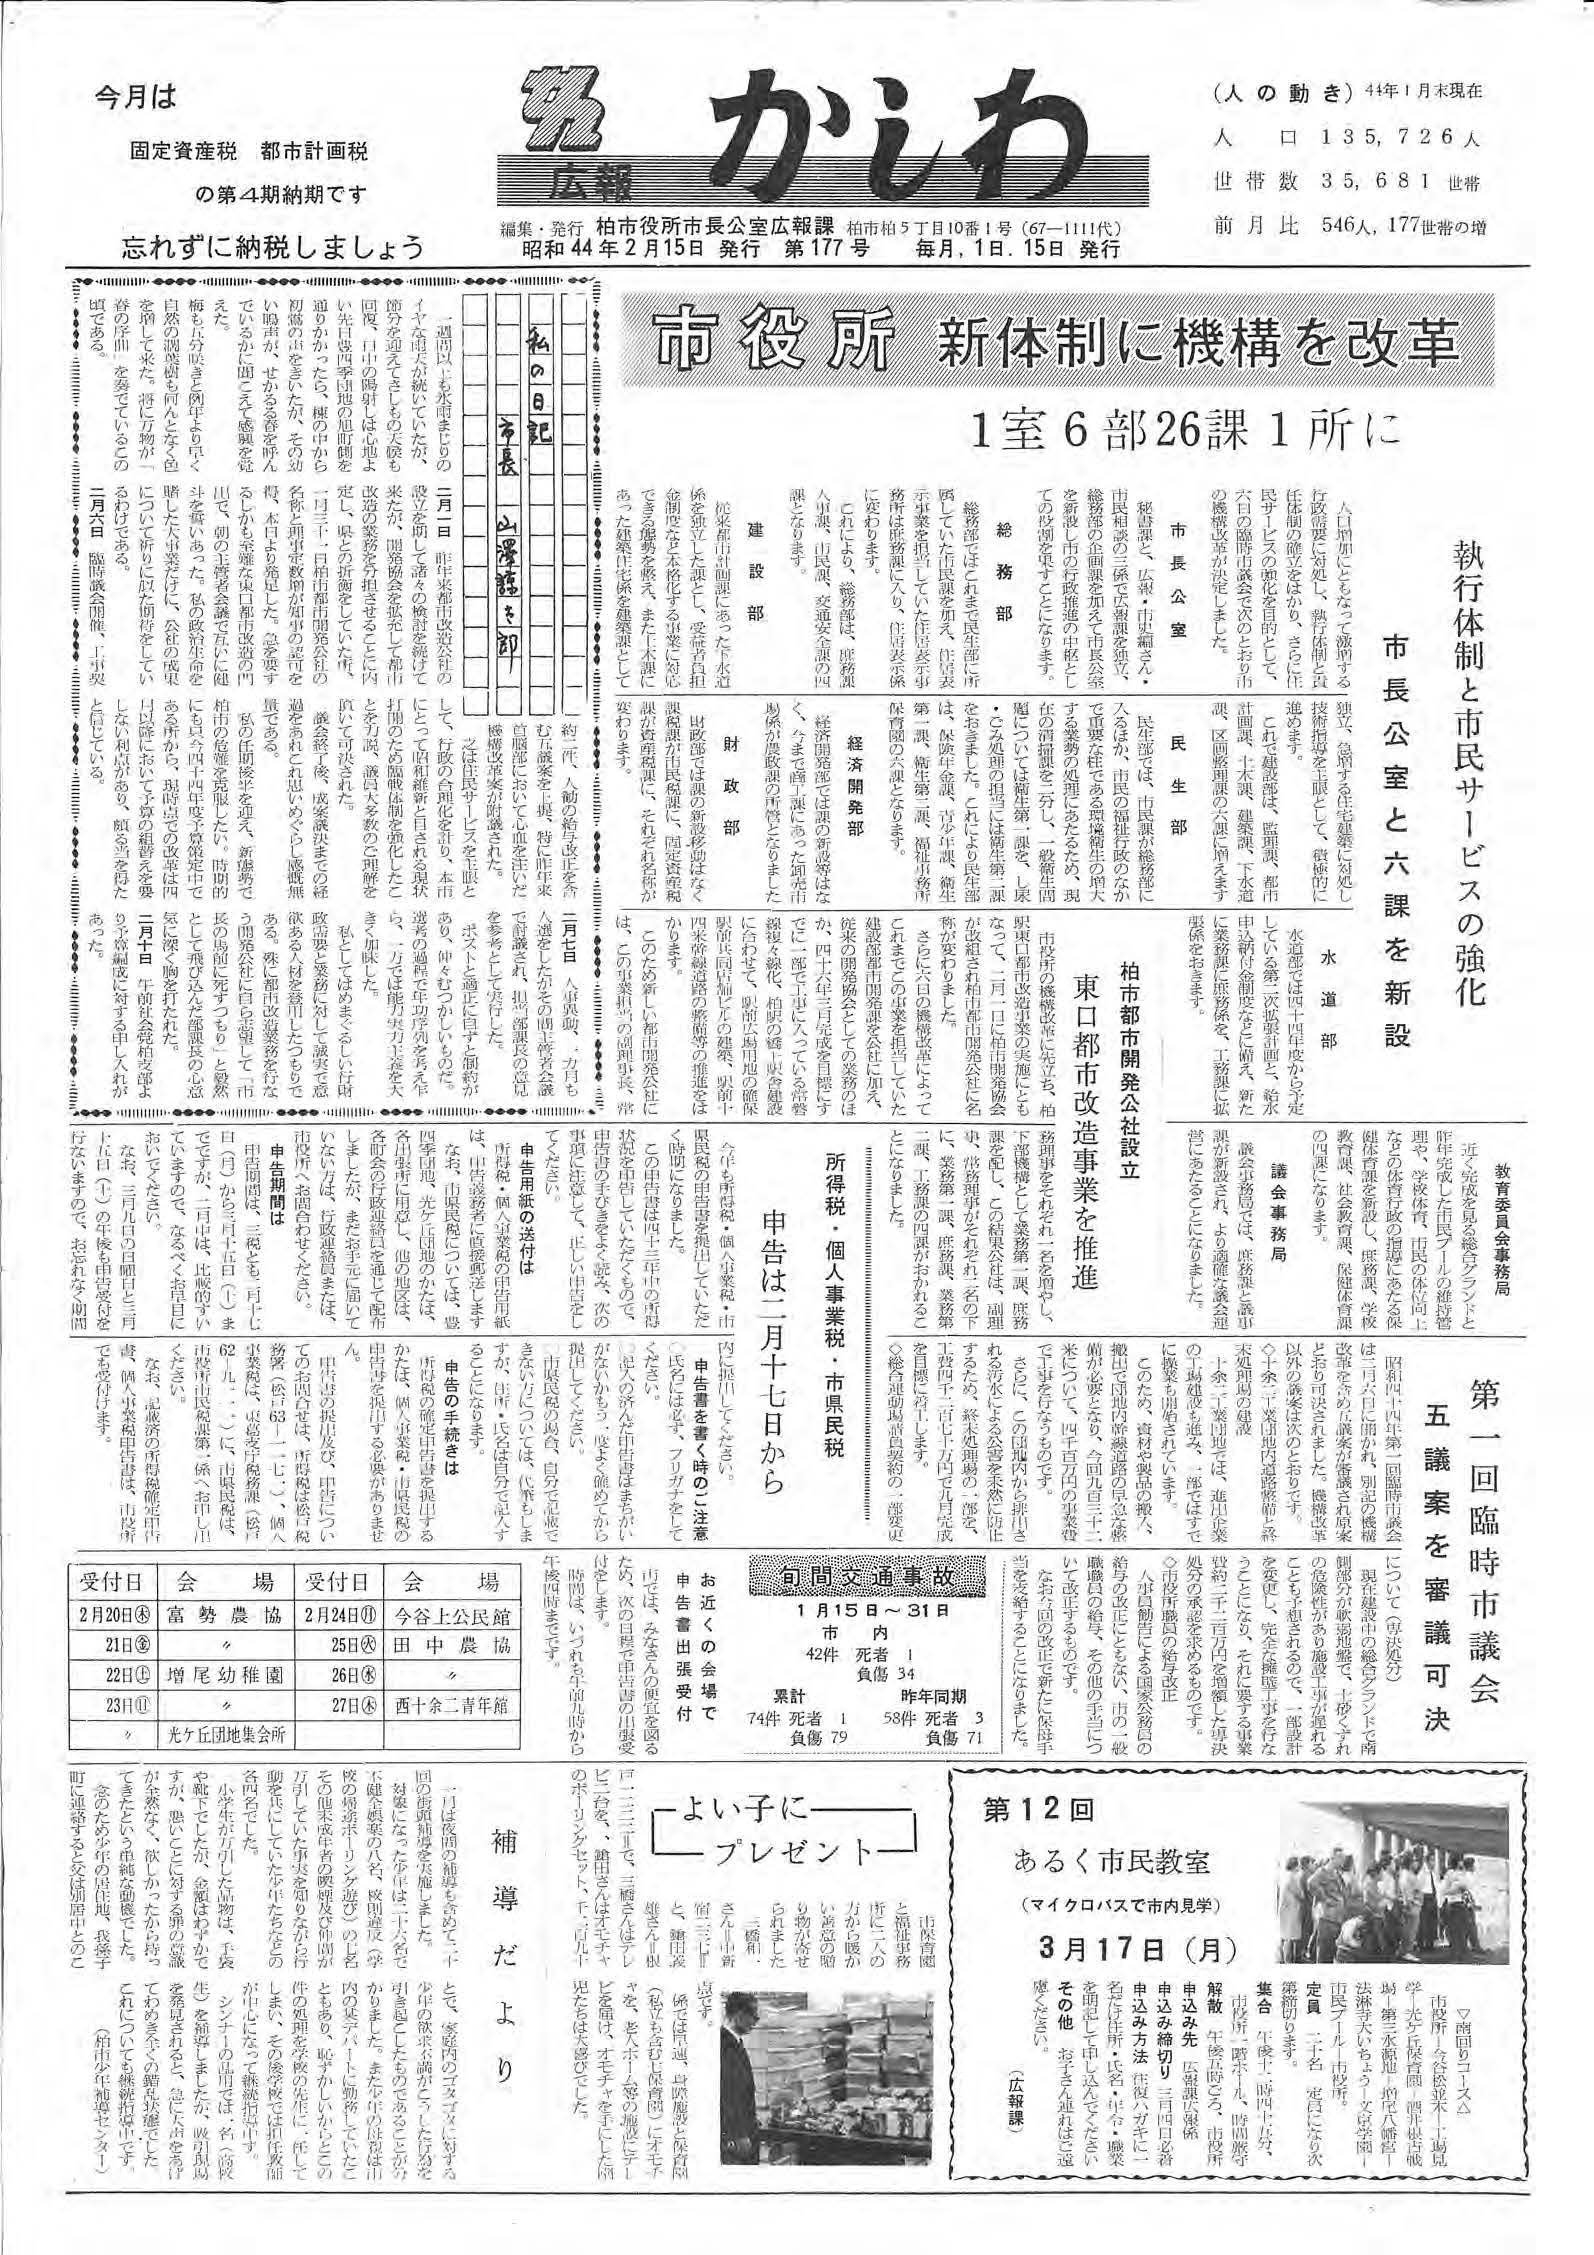 広報かしわ　昭和44年2月15日発行　177号